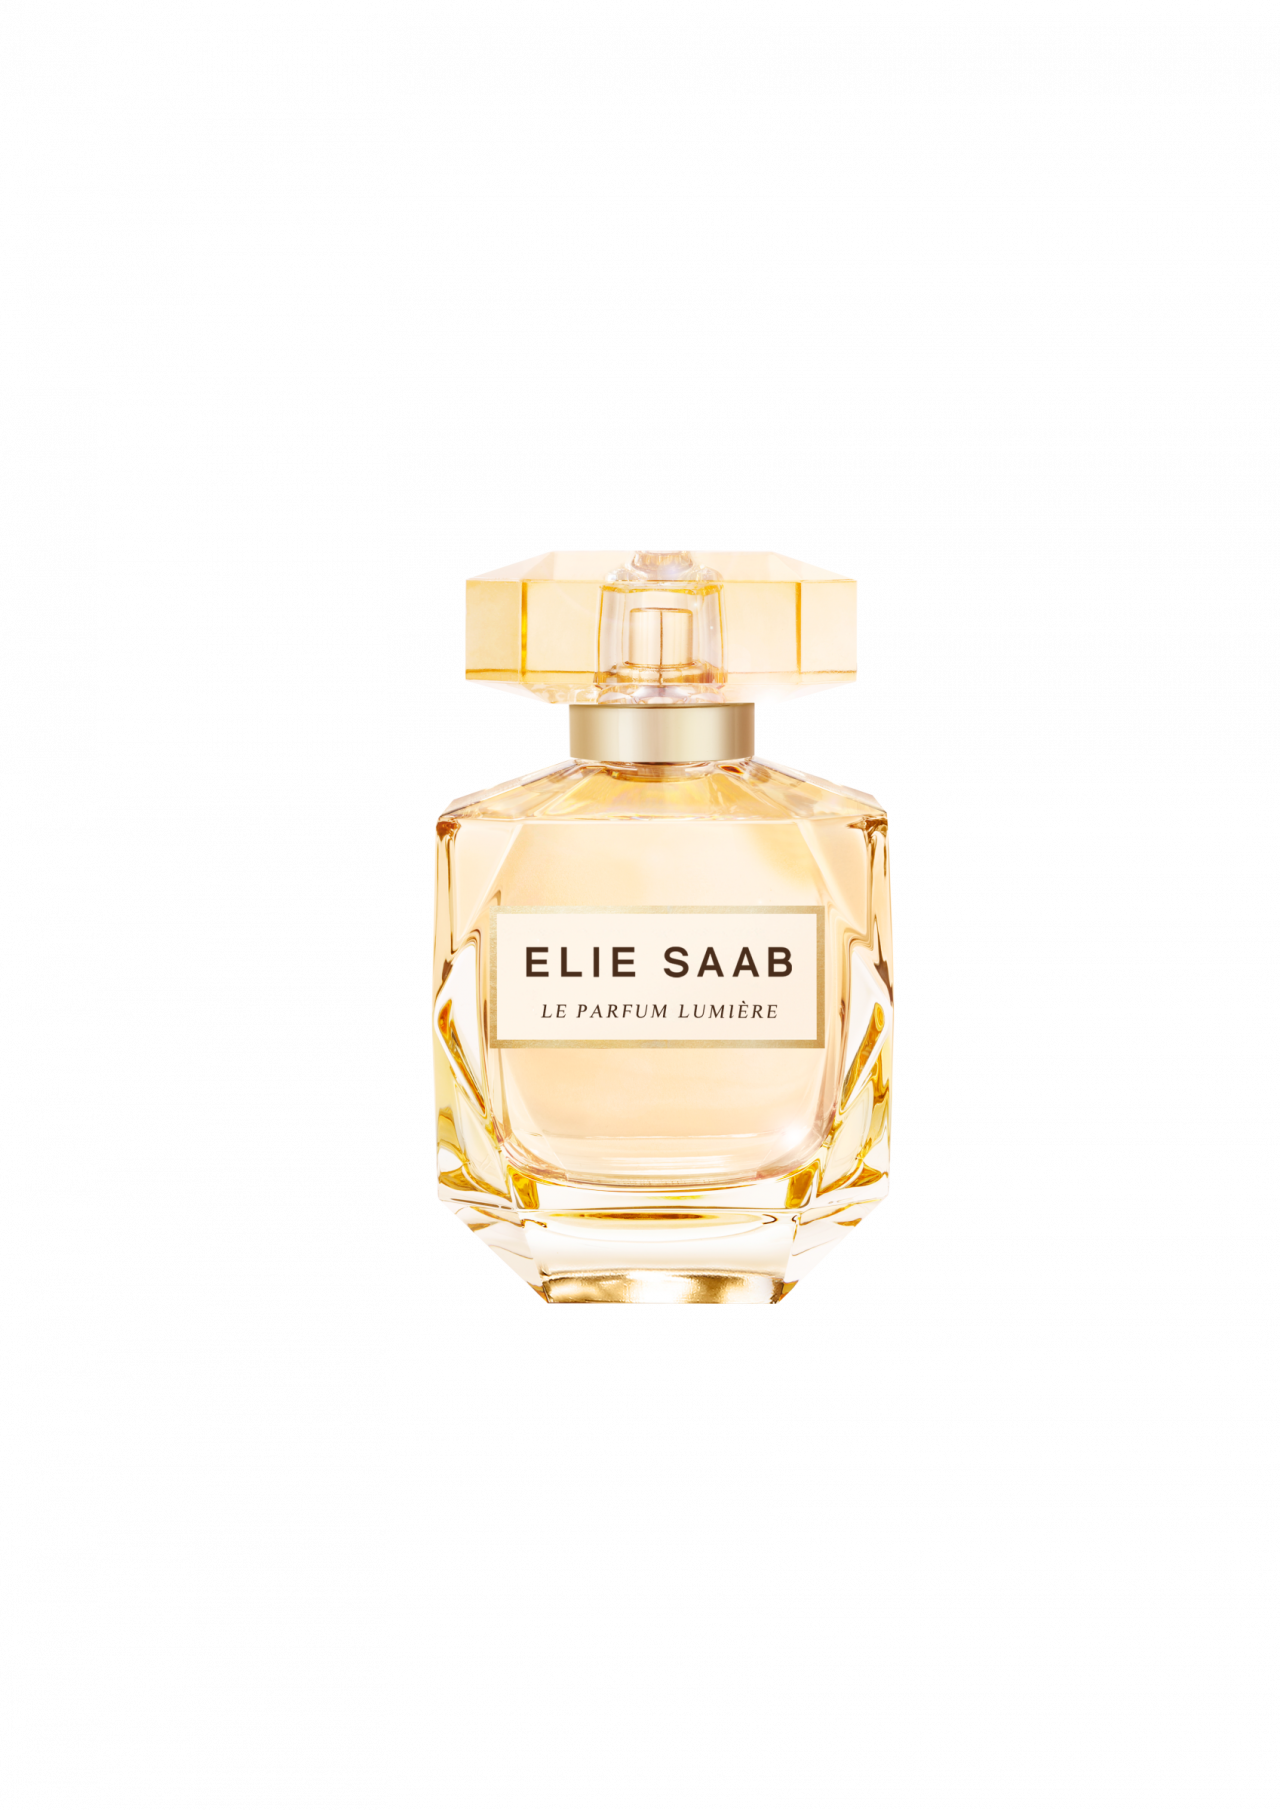 Onzichtbaar accessoireEen parfum mag dan wel een onzichtbaar accessoire zijn, het geeft een goed gevoel en maakt je uitstraling compleet. En het staat altijd chic in de badkamer, zoals deze fraaie flacon van Elie Saab (113 euro voor 90 ml).